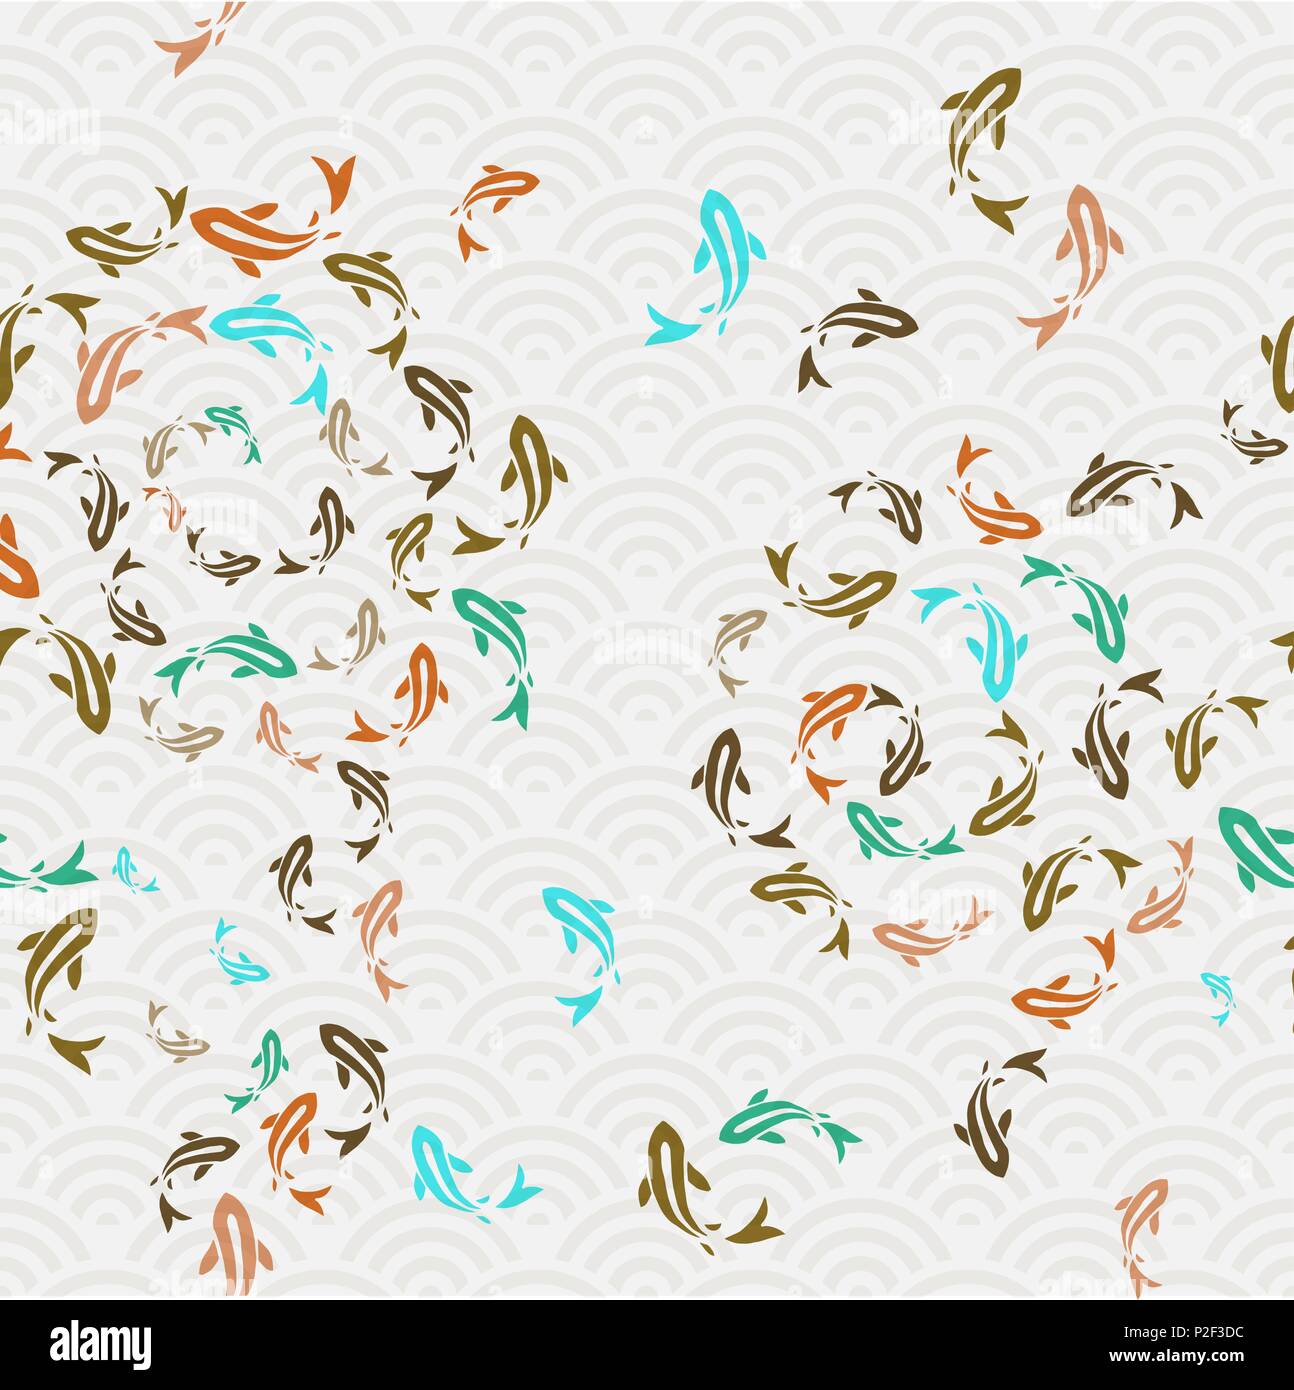 Peces Koi patrón sin fisuras, colorido arte de estilo asiático de la carpa goldfish nadando en el estanque. Antecedentes ilustración dibujada a mano. Vector EPS10. Ilustración del Vector